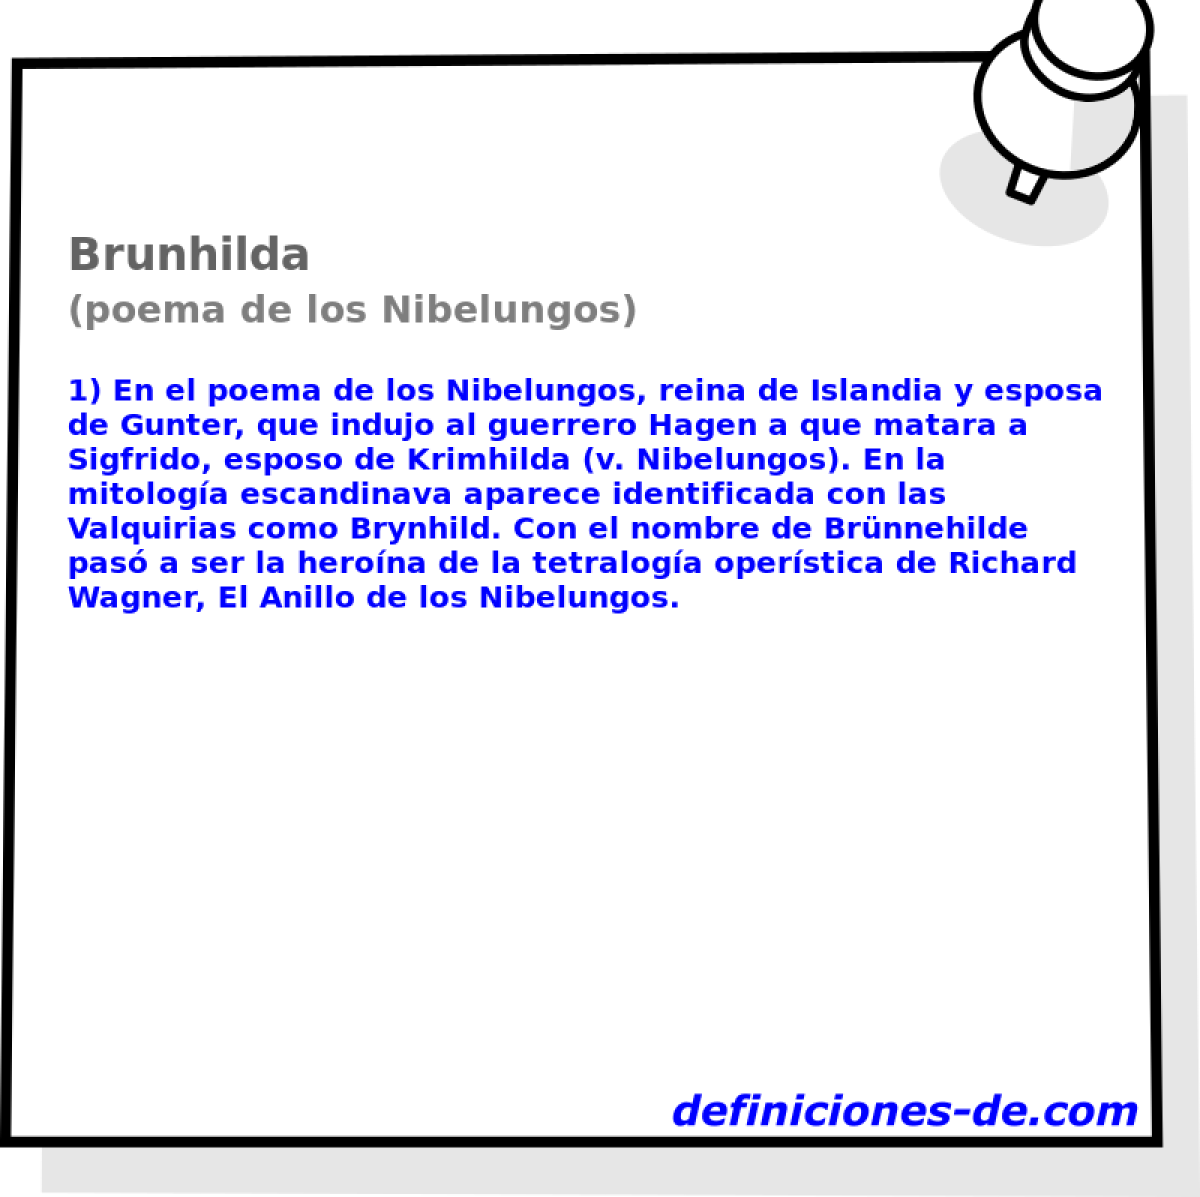 Brunhilda (poema de los Nibelungos)